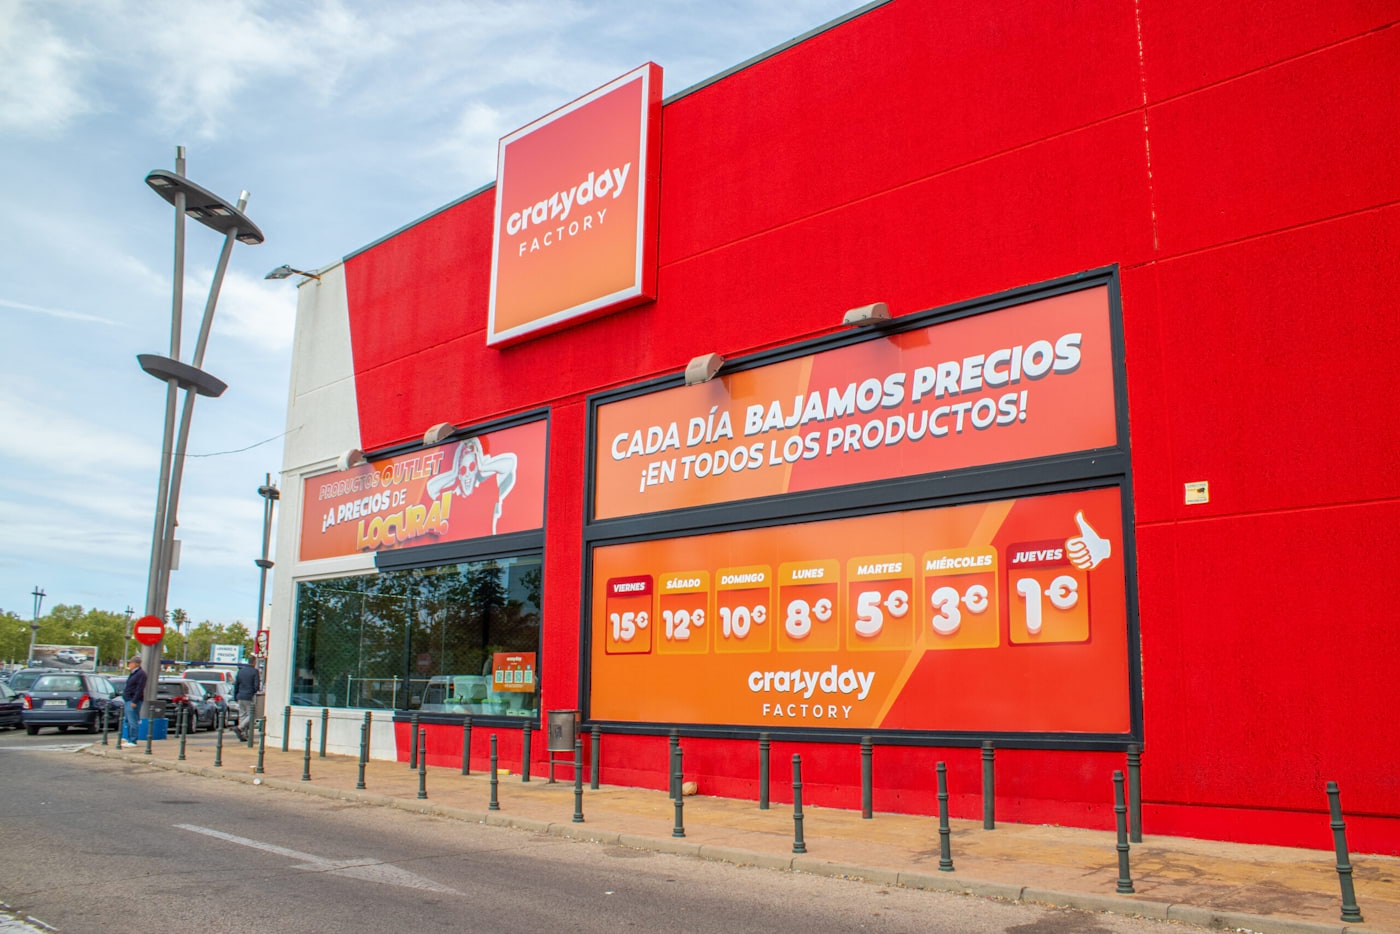 Outlet de  en Valencia: dónde está y cómo se compra, Abre en  Valencia Crazy Day Factory, el 'outlet' de  donde comprar productos  por un euro